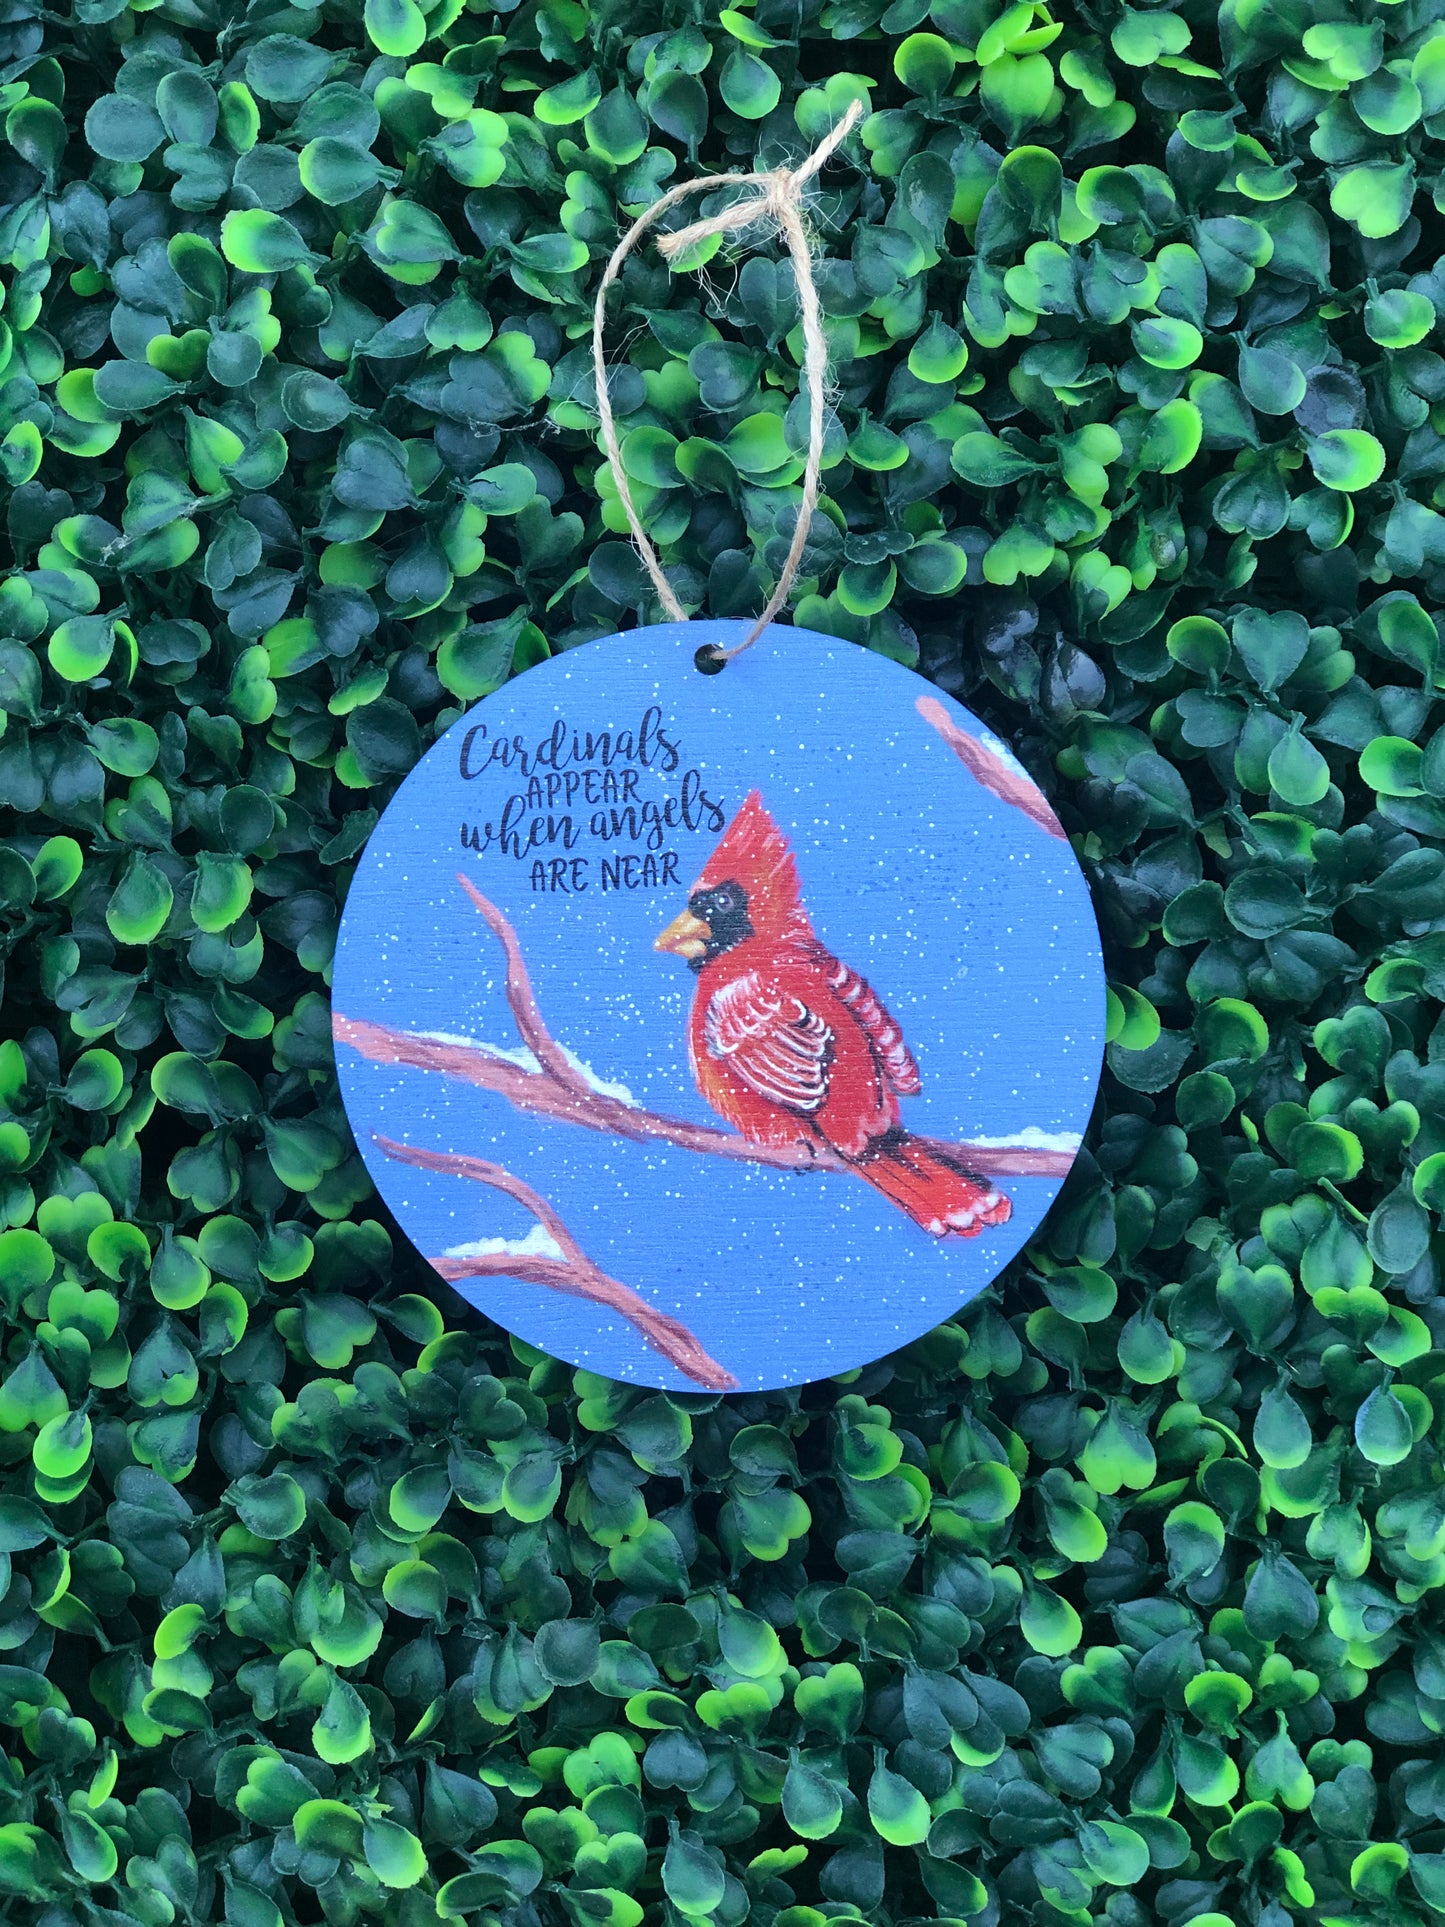 4” cardinals appear ornament